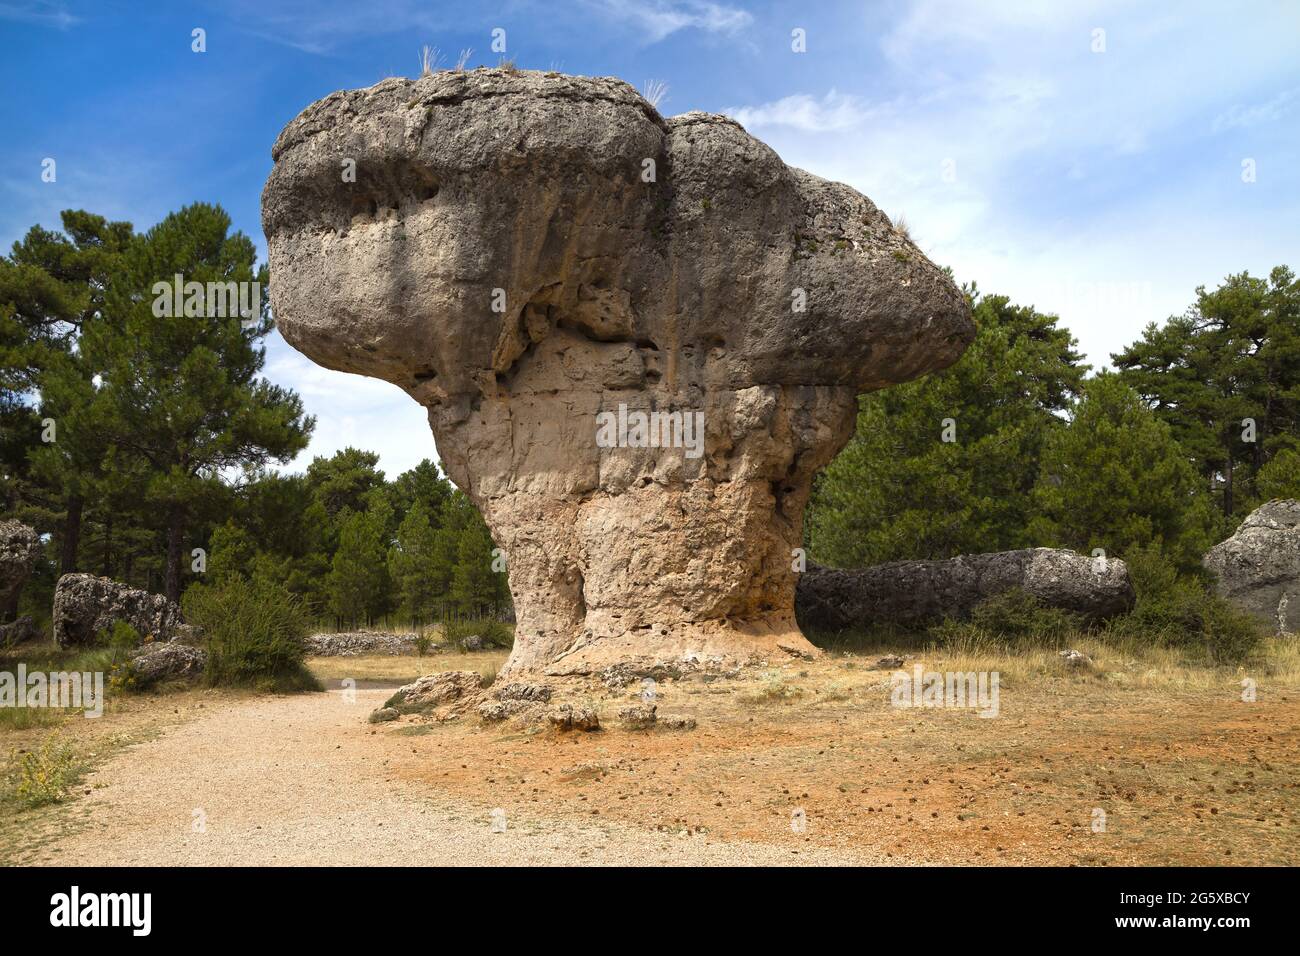 Mushroom Rock in the Ciudad Encantada, Cuenca, Spain. Stock Photo